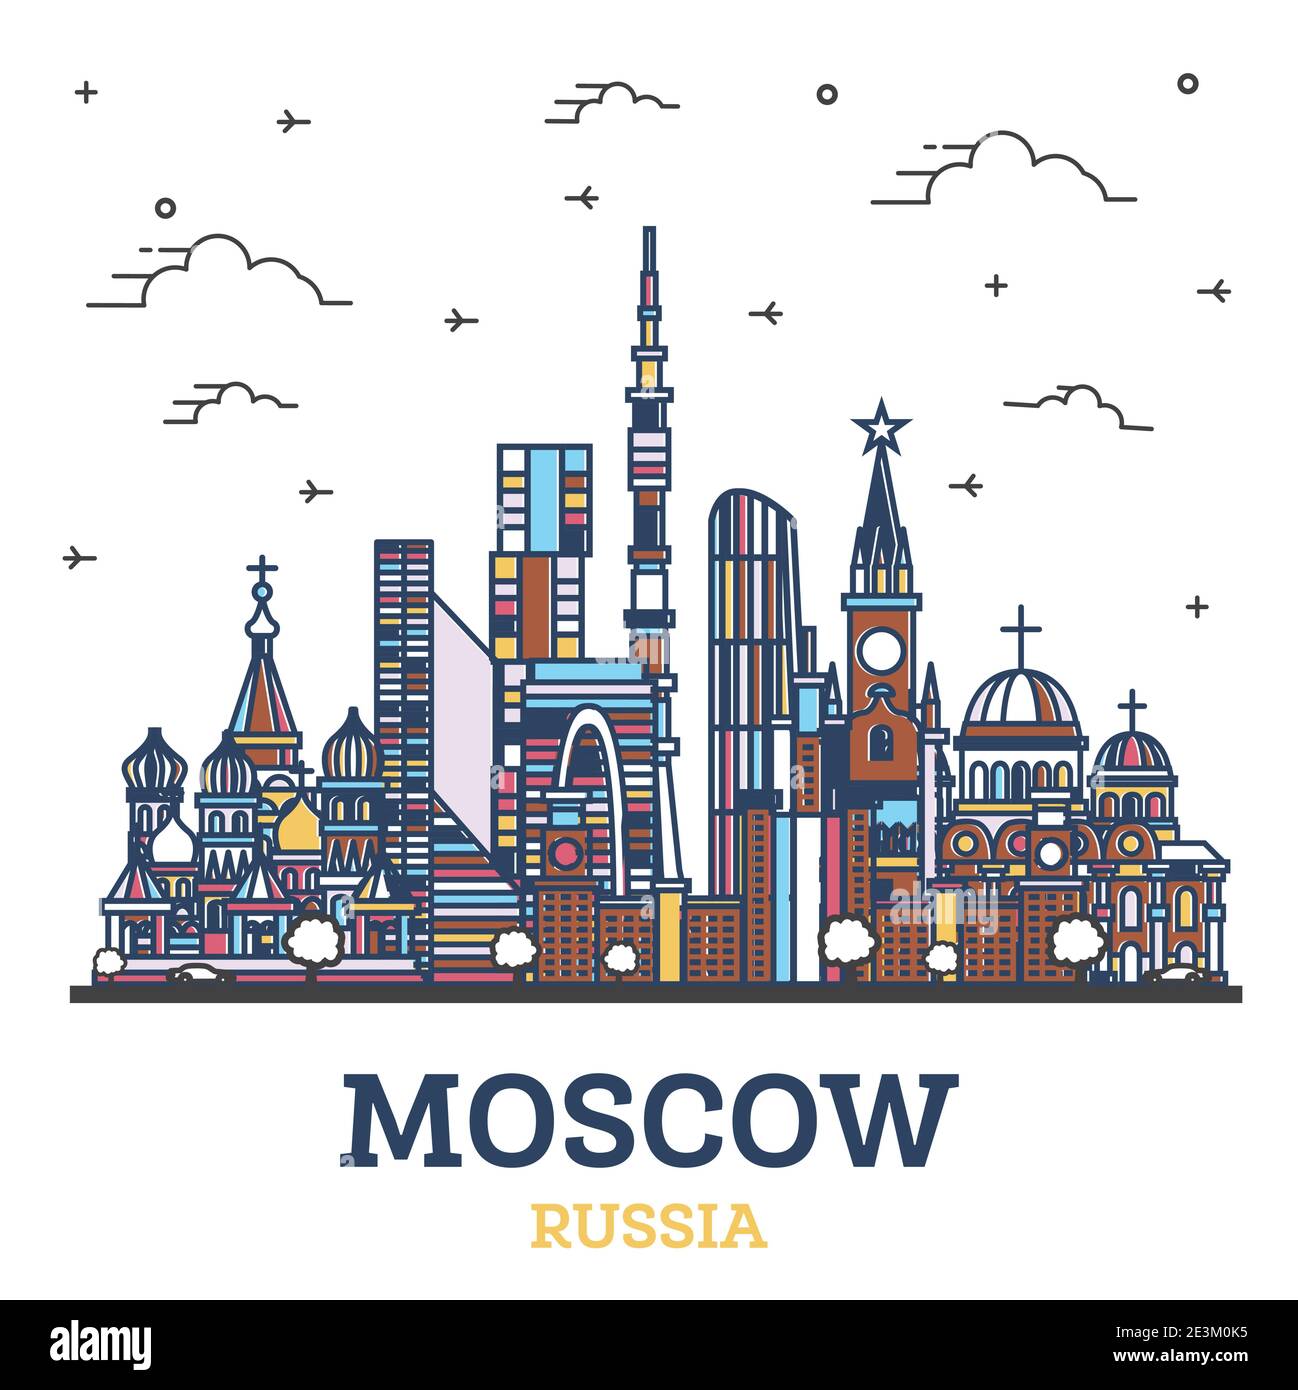 Skizzieren Sie Moskau Russland City Skyline mit farbigen historischen Gebäuden isoliert auf Weiß. Vektorgrafik. Moskauer Stadtbild mit Wahrzeichen. Stock Vektor